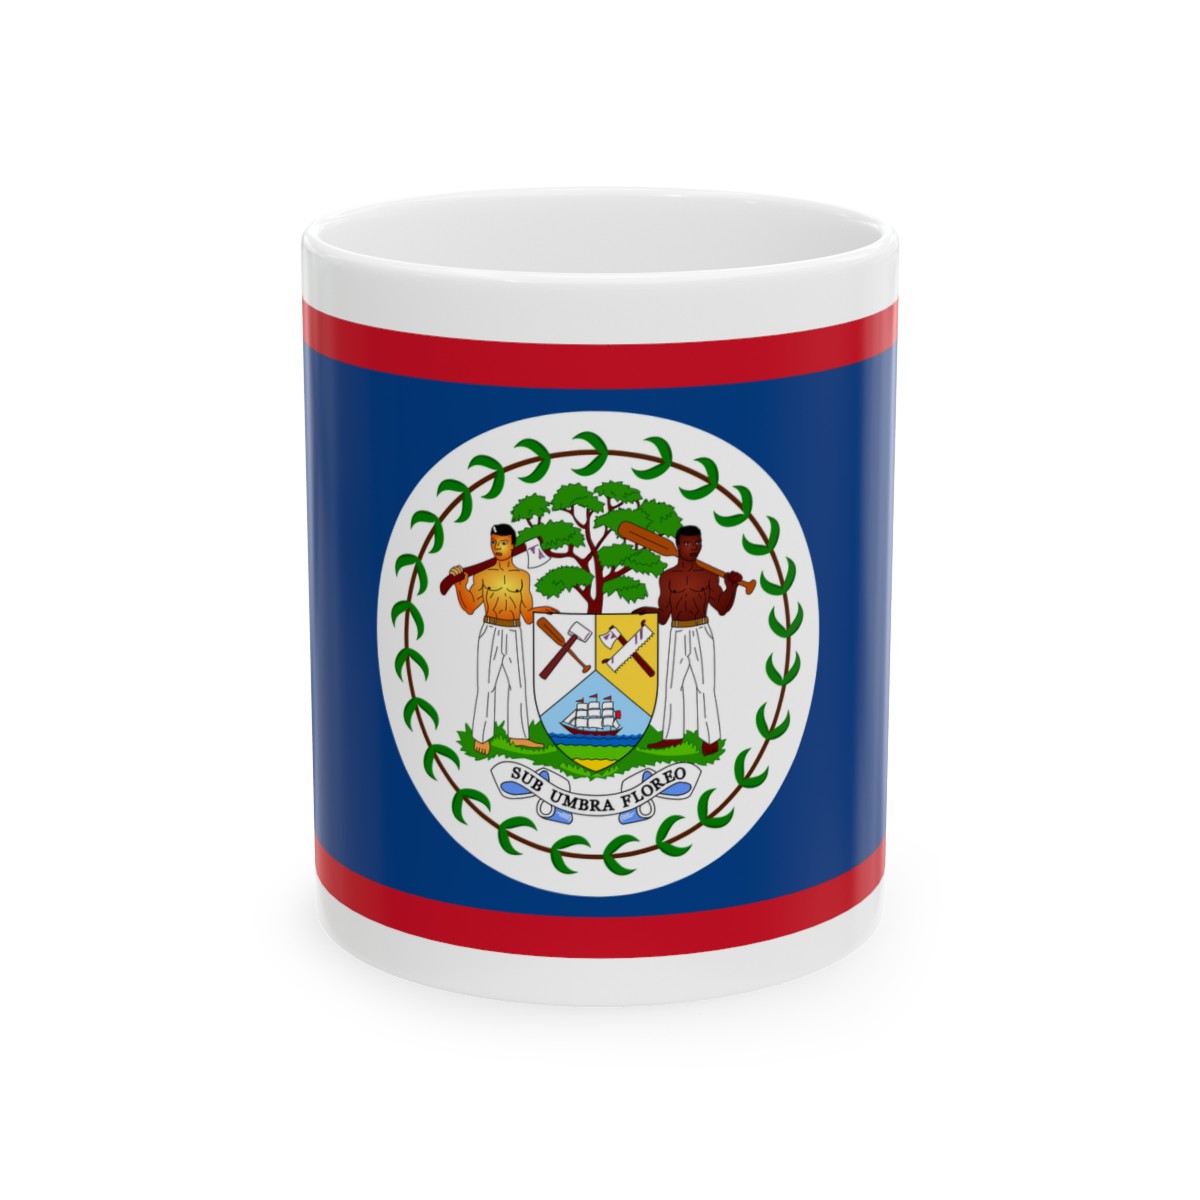 Belize Flag Ceramic Mug 11oz product thumbnail image